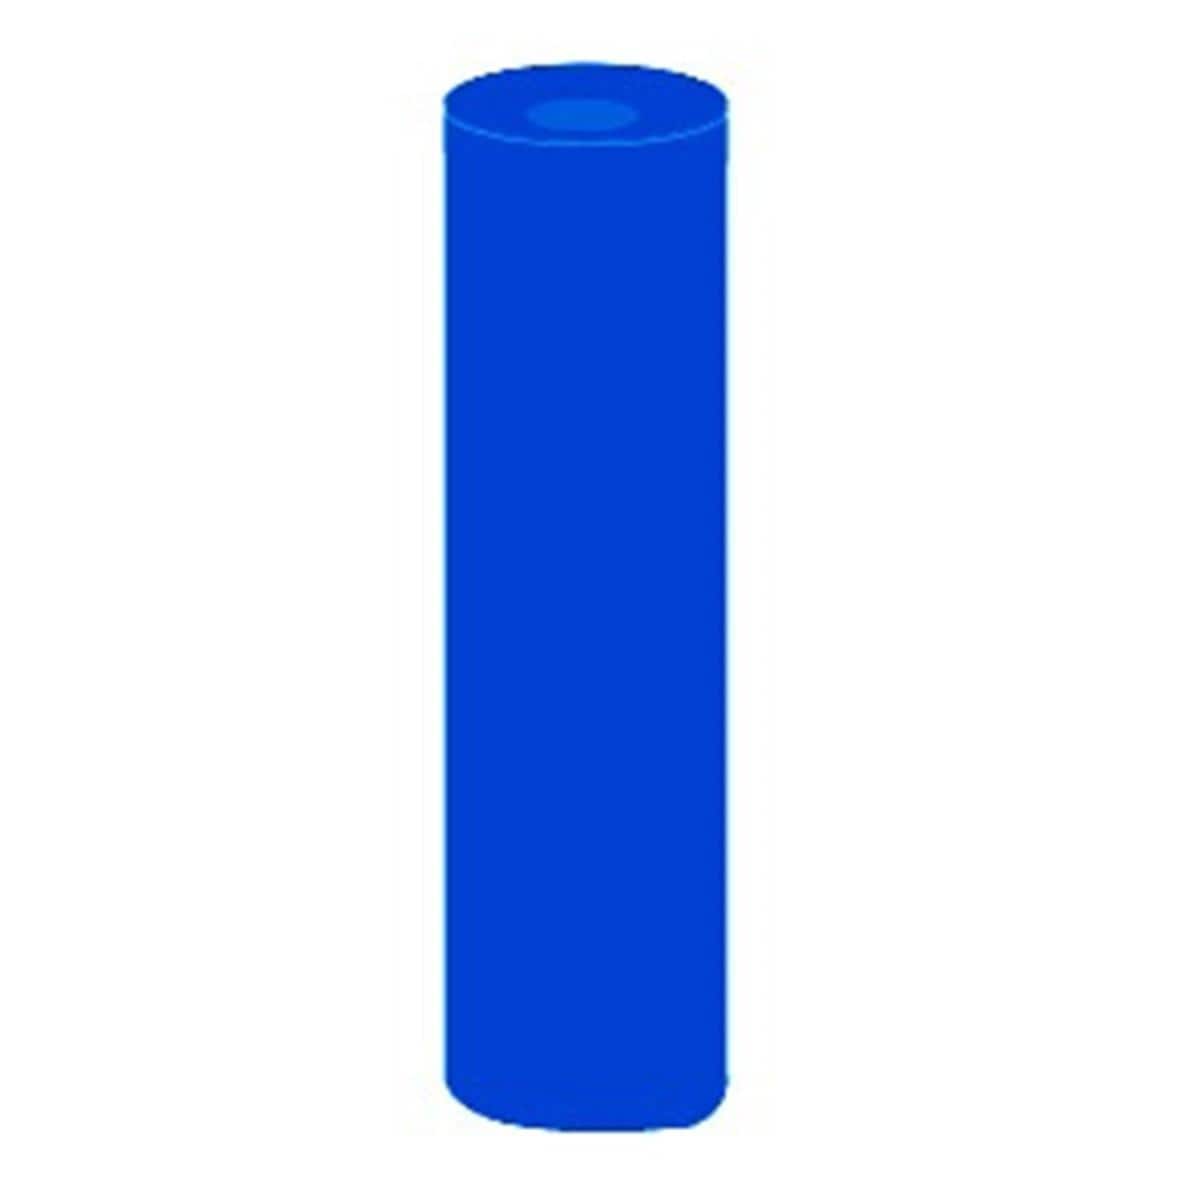 Caoutchouc DEDECO - Cylindre - bleu 4593 - La bote de 100